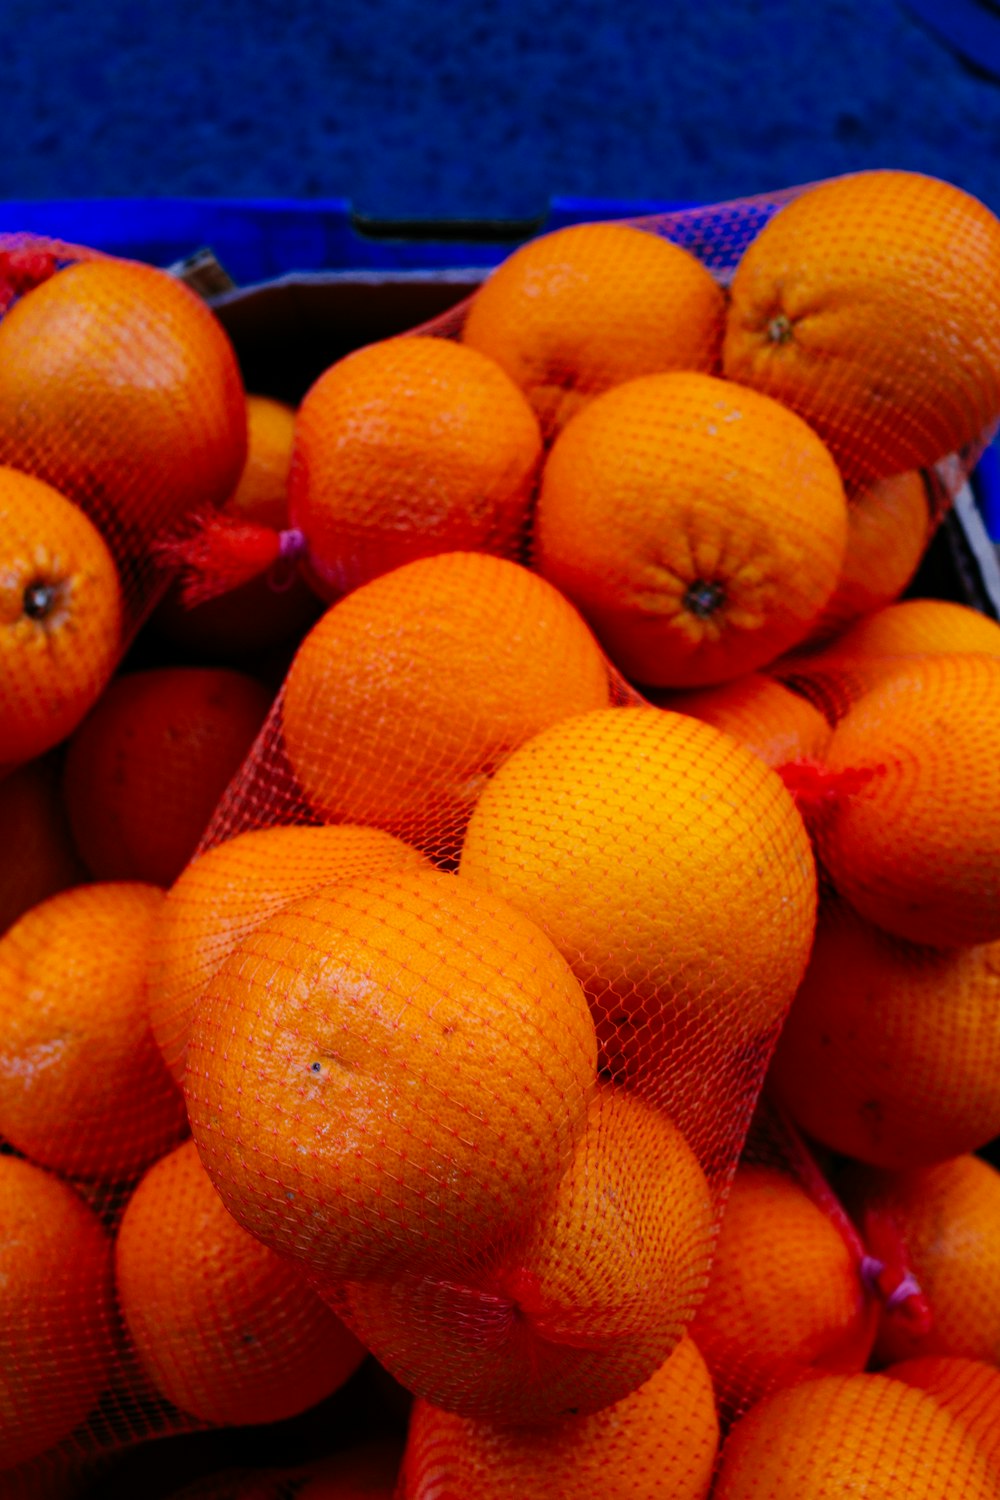 Lote de fruta naranja